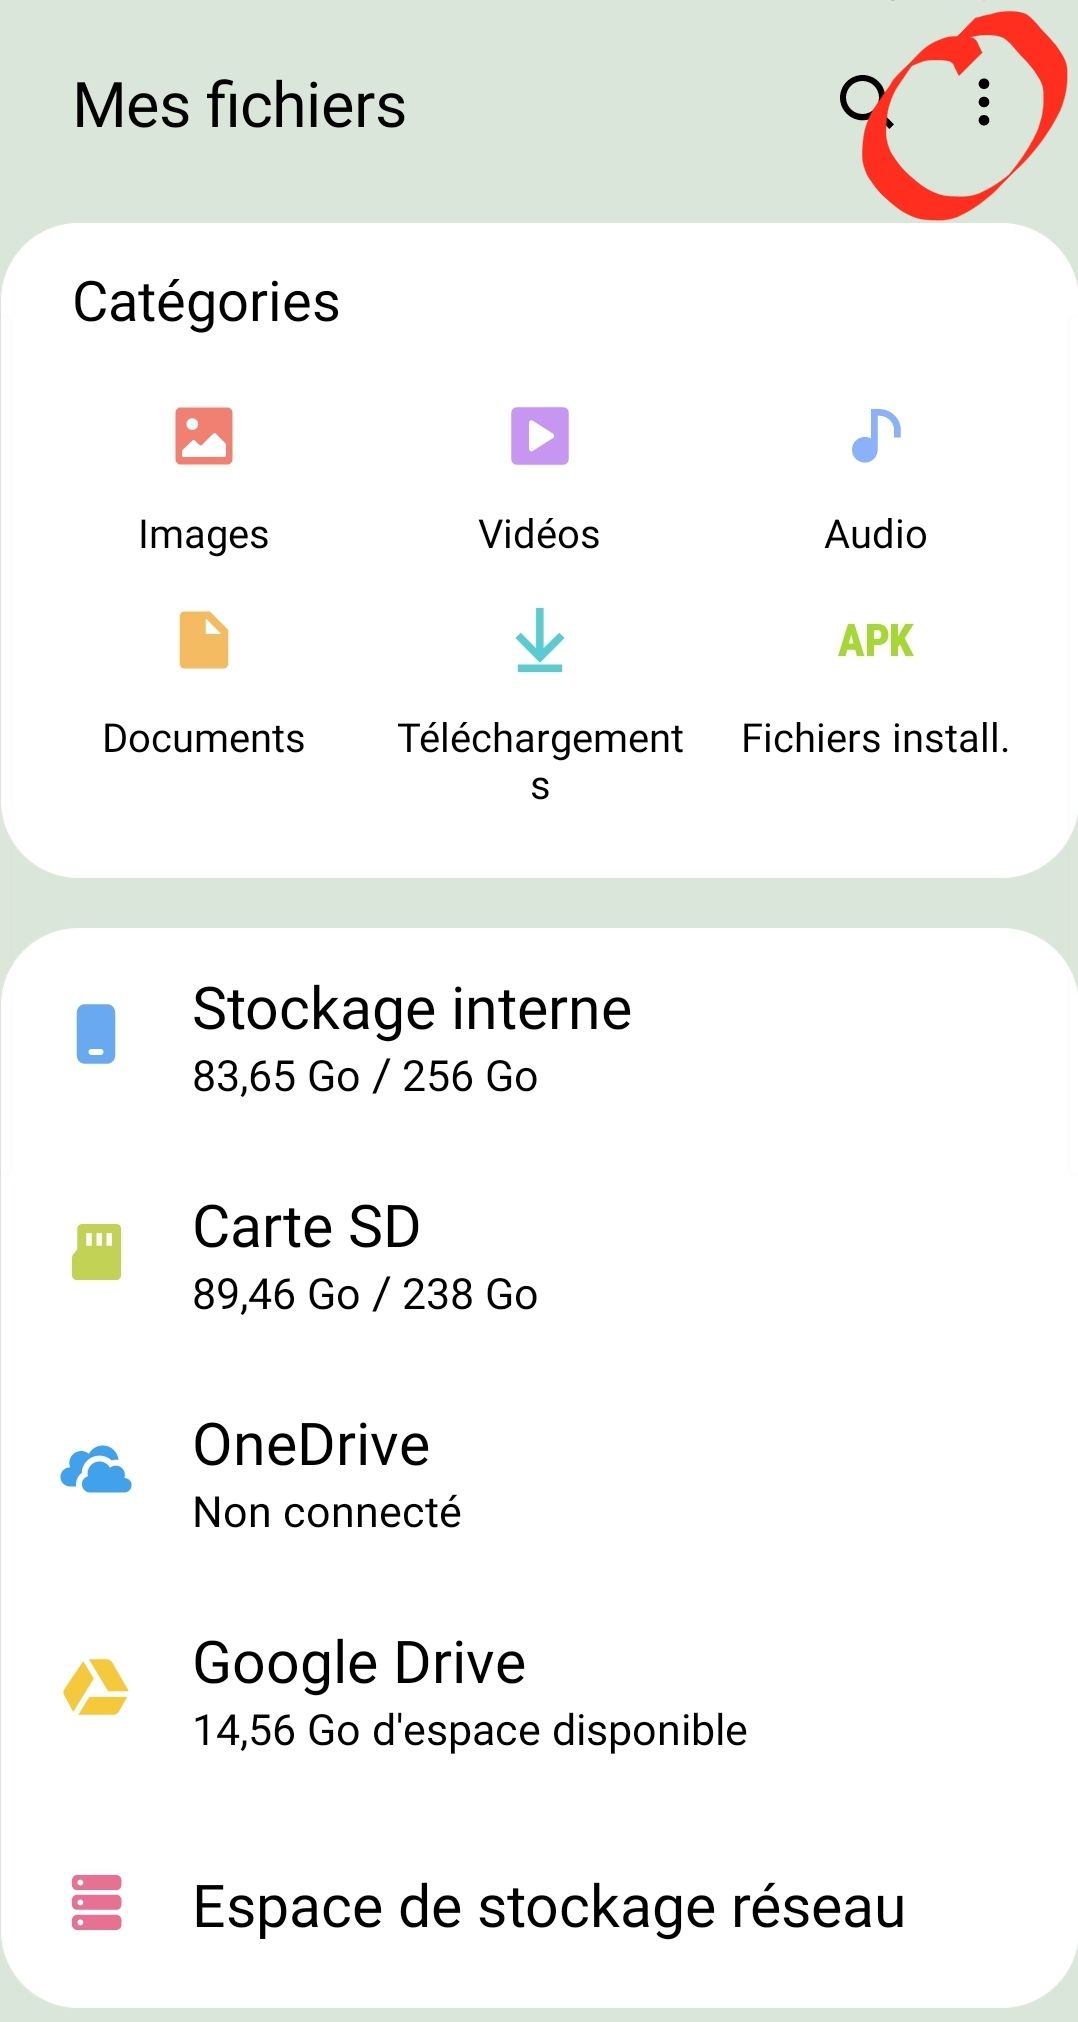 Help] Récupération fichier supprimé depuis l'app "Mes fichiers" de samsung.  - Samsung Community